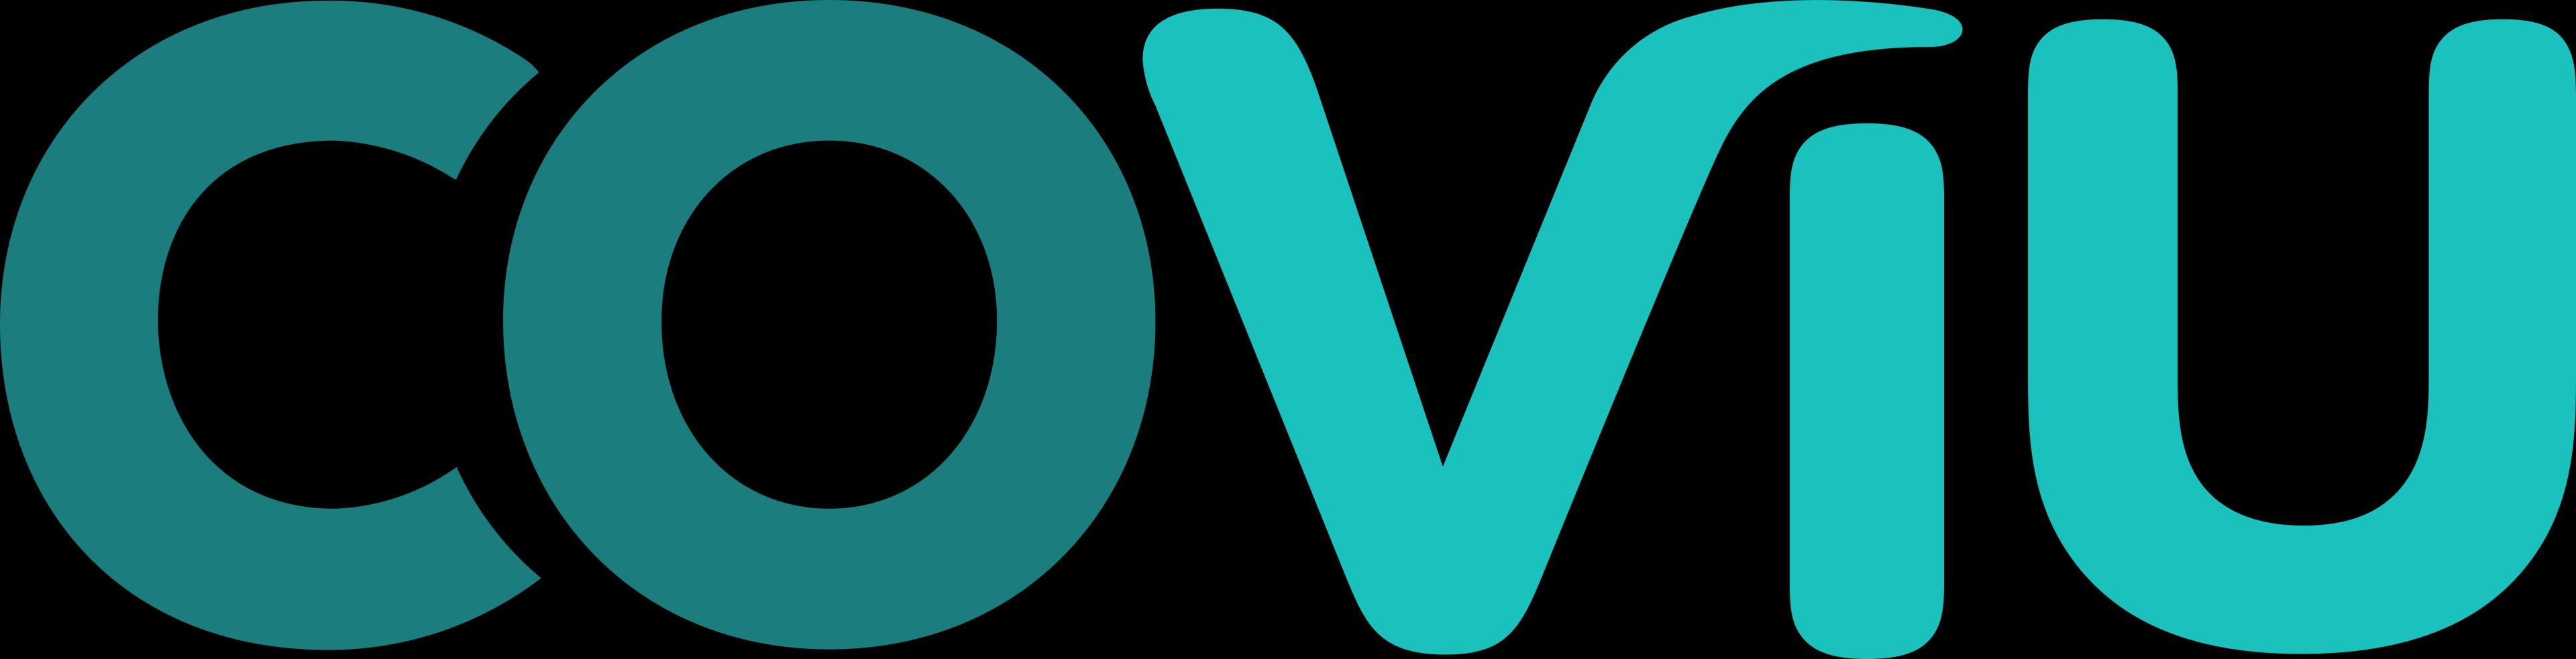 Coviu_logo